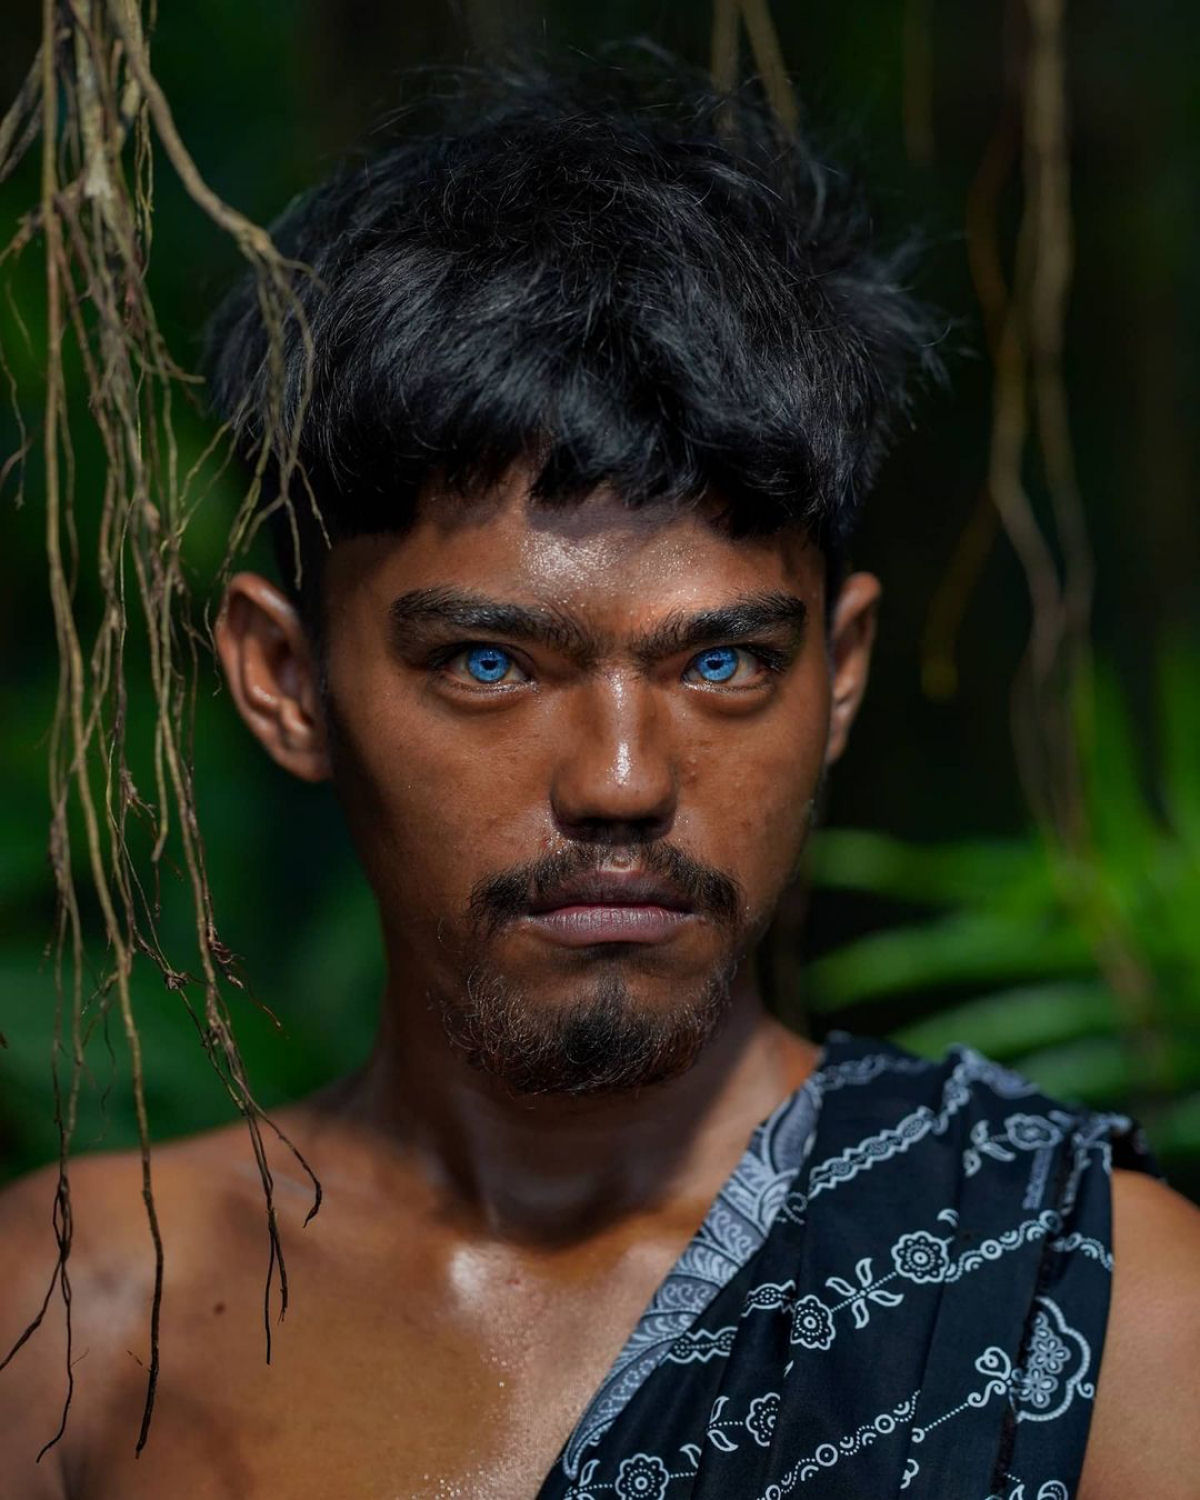 Olhos azuis e brilhantes: as hipnotizantes fotos de uma tribo com uma rara mutação genética 06